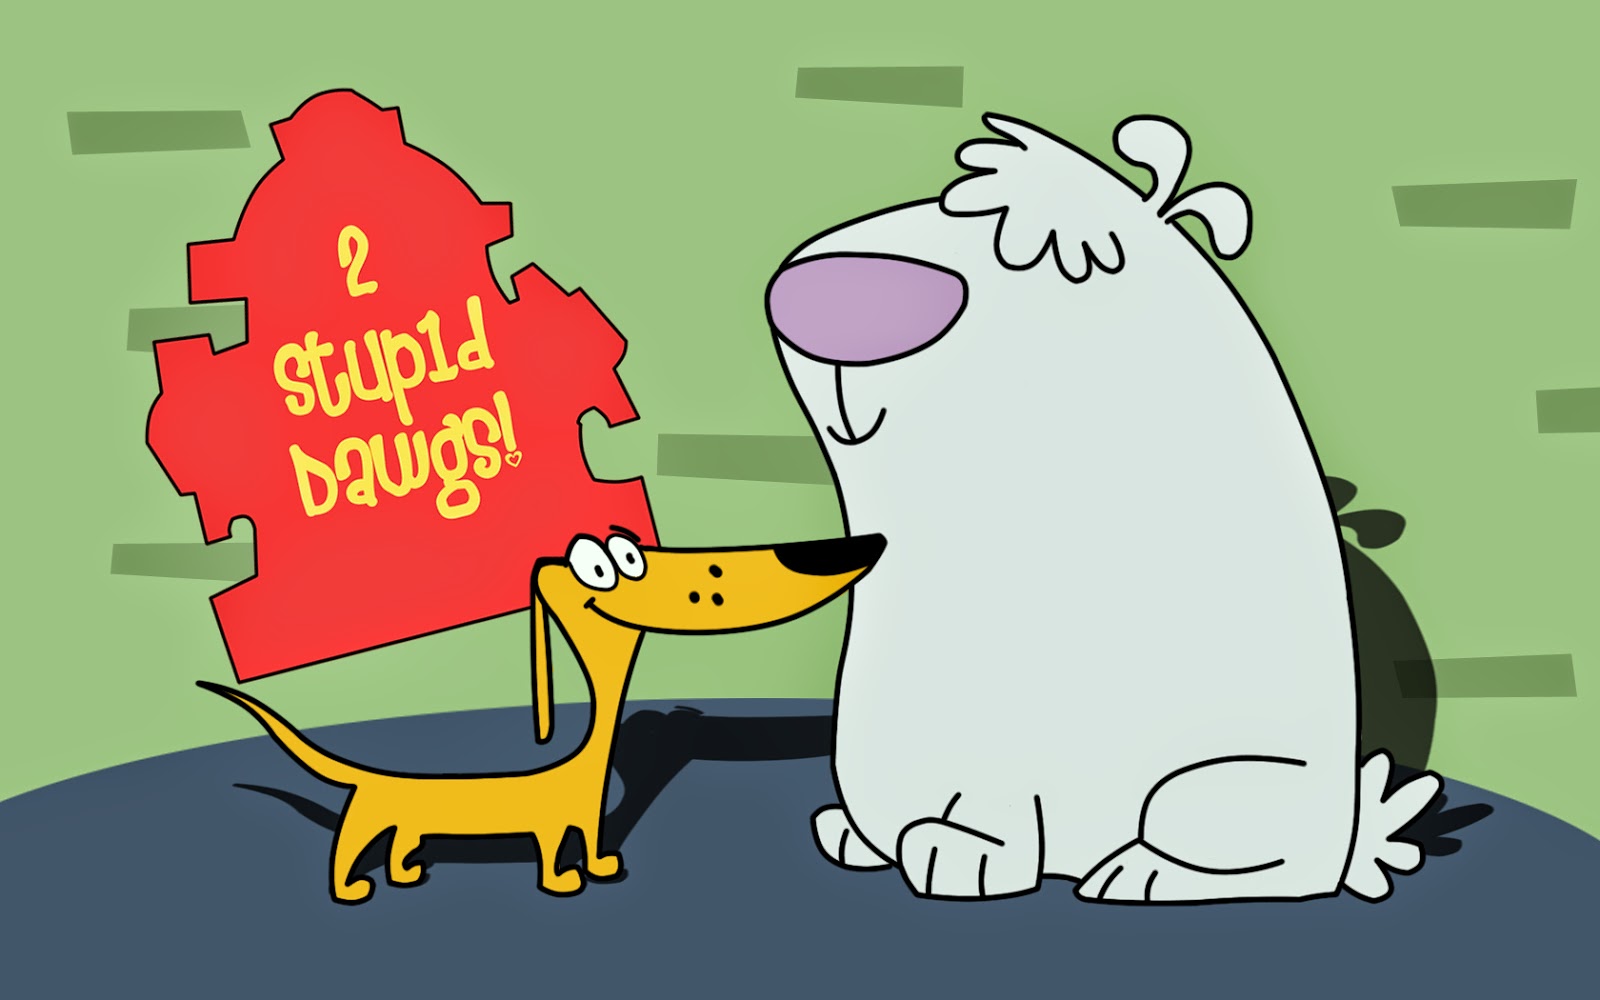 Kumpulan Gambar 2 Stupid Dogs Wallpaper Gambar Lucu Terbaru Cartoon Animation Pictures